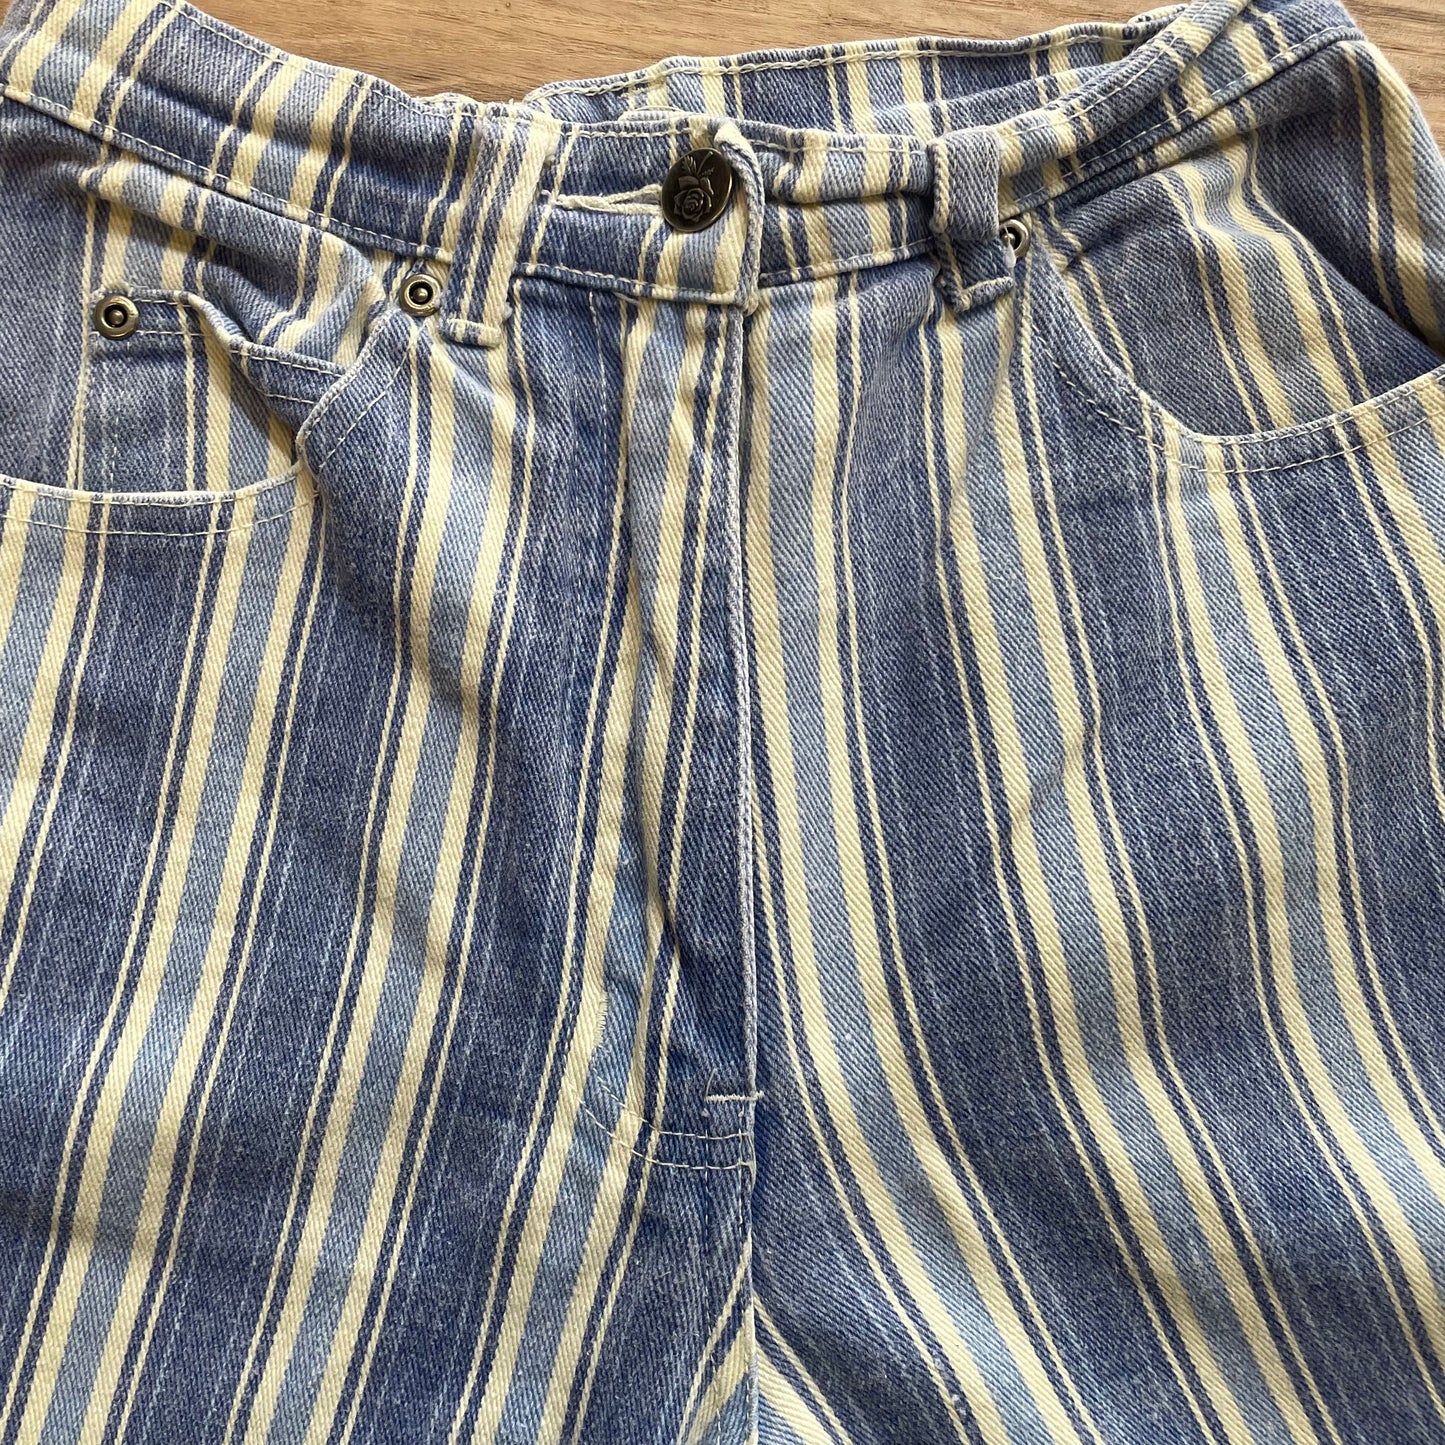 Striped Jeans